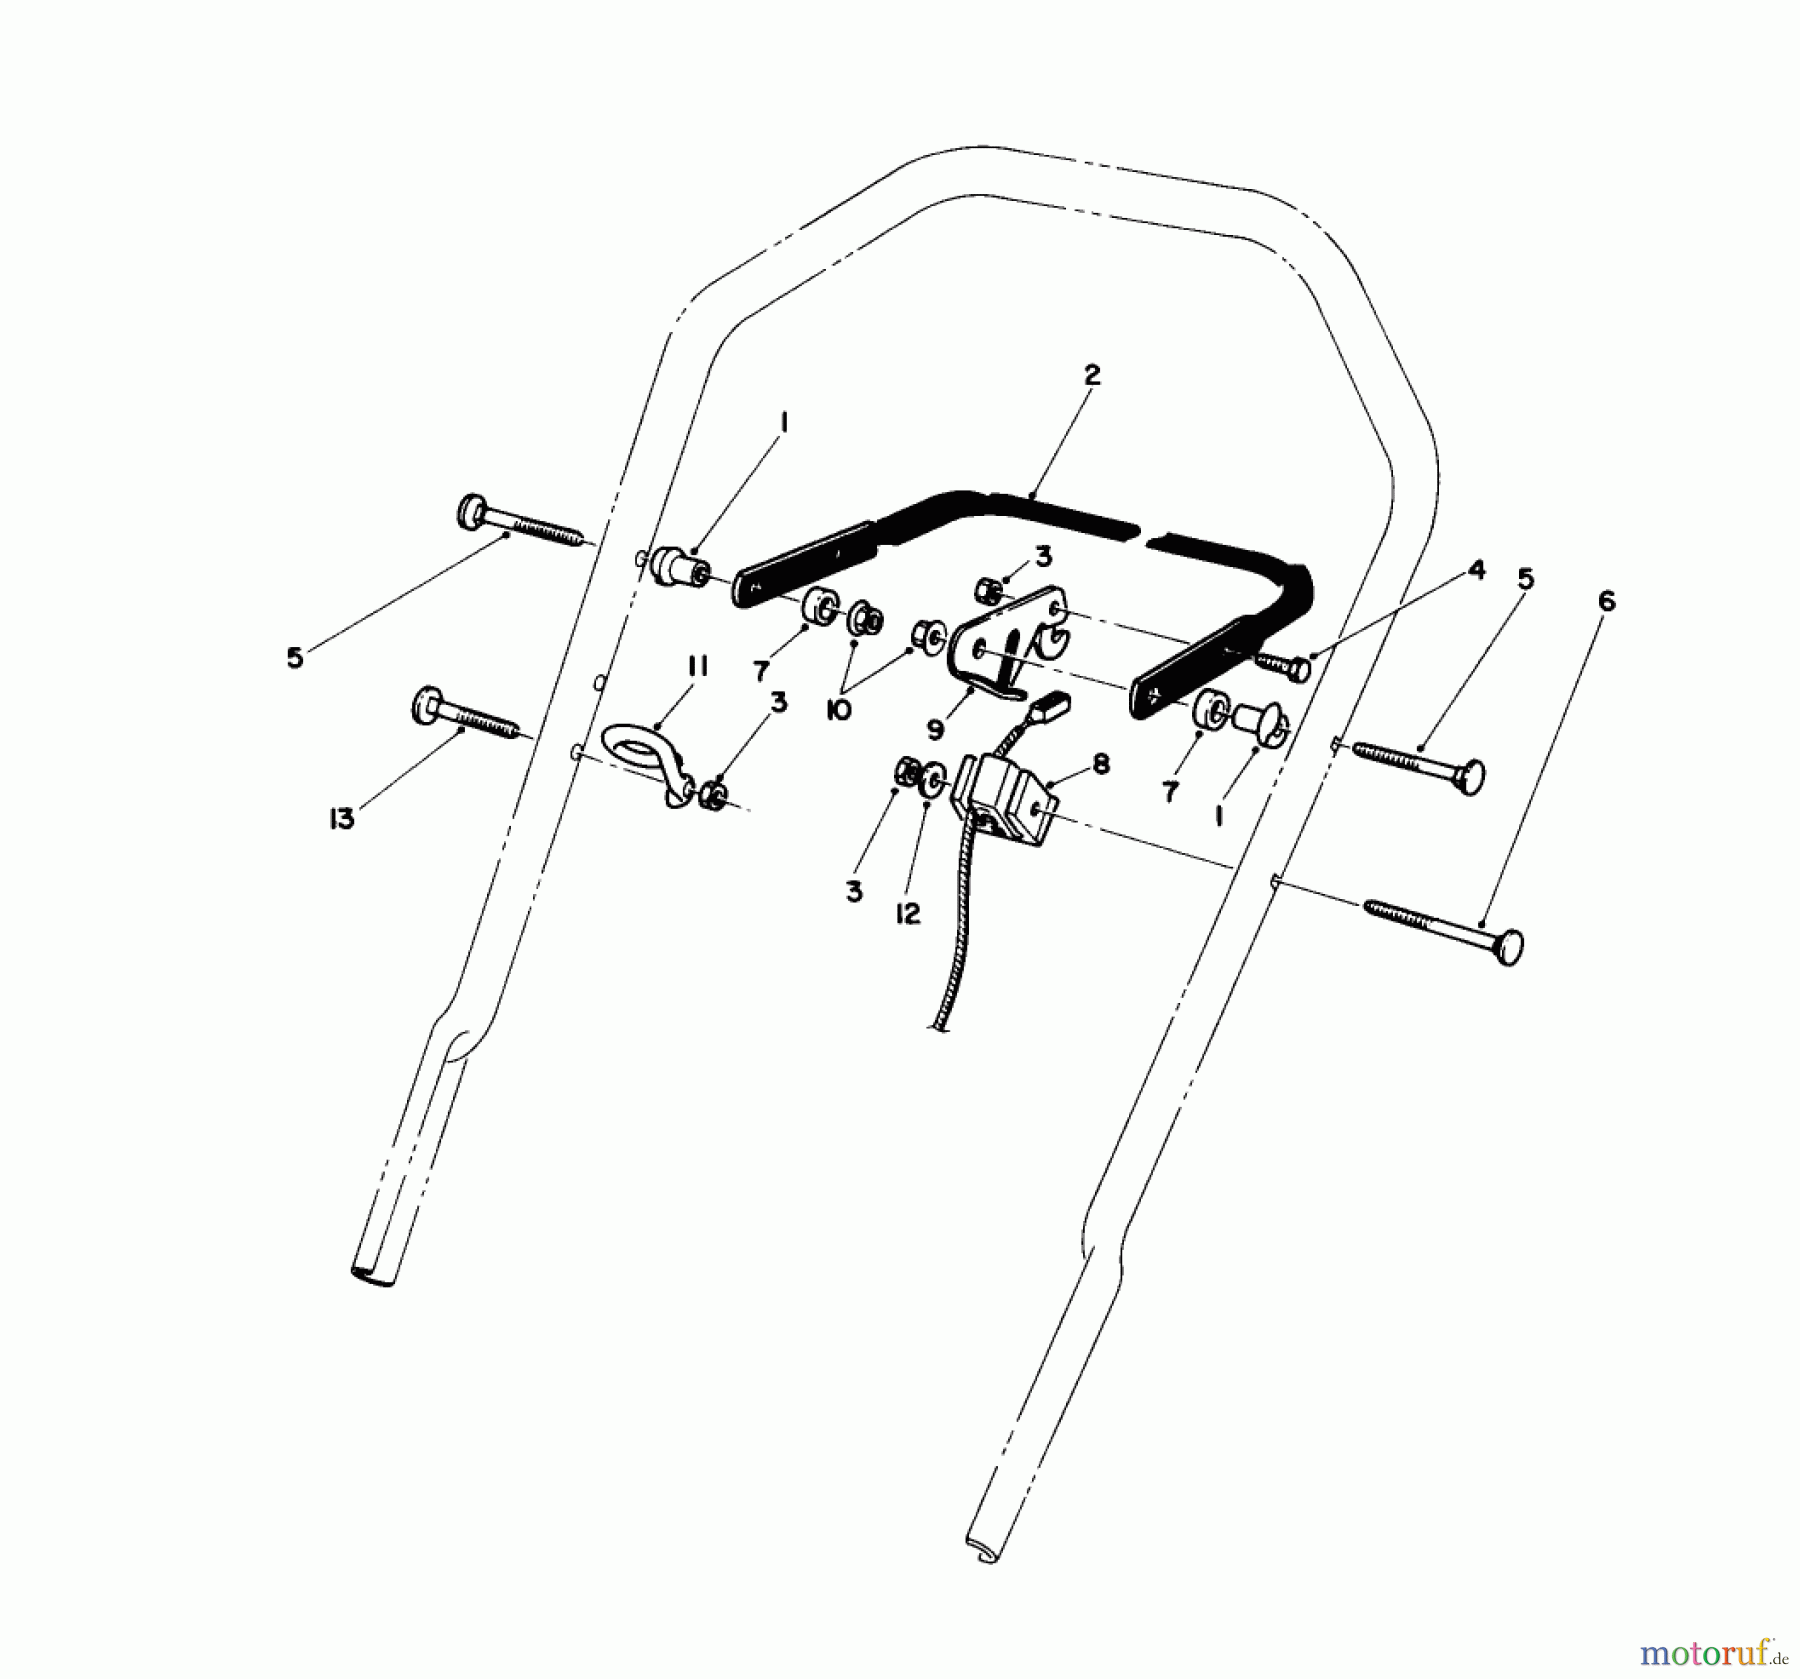  Toro Neu Mowers, Walk-Behind Seite 1 16585 - Toro Lawnmower, 1989 (9000001-9999999) CONTROL ASSEMBLY